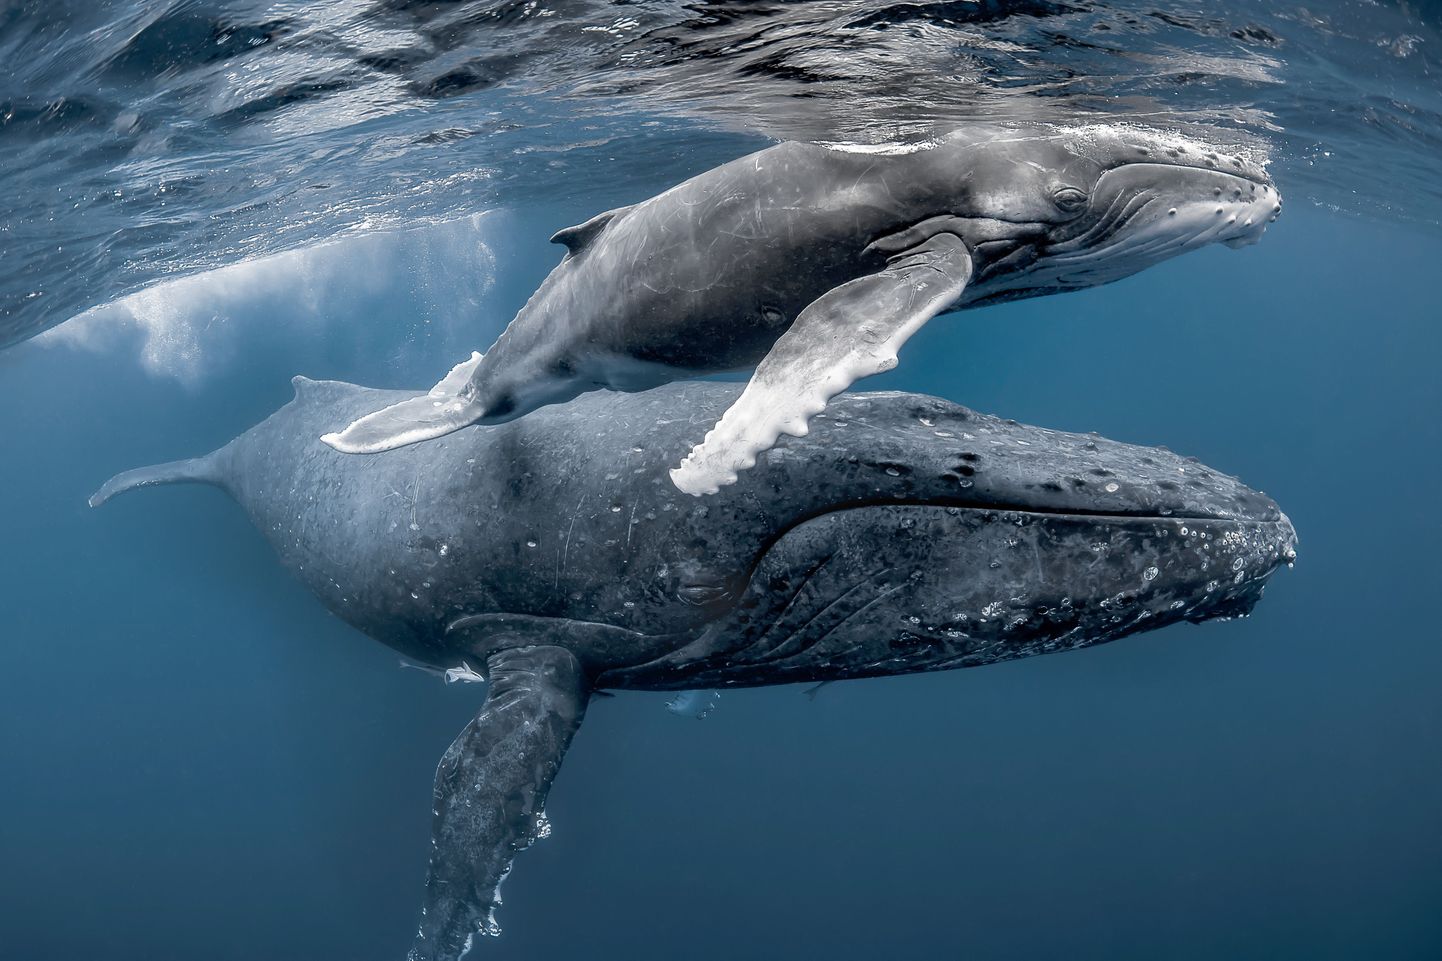 Küürvaalad hüppavad veest välja, et kaugemal asuvate vaaladega suhelda.